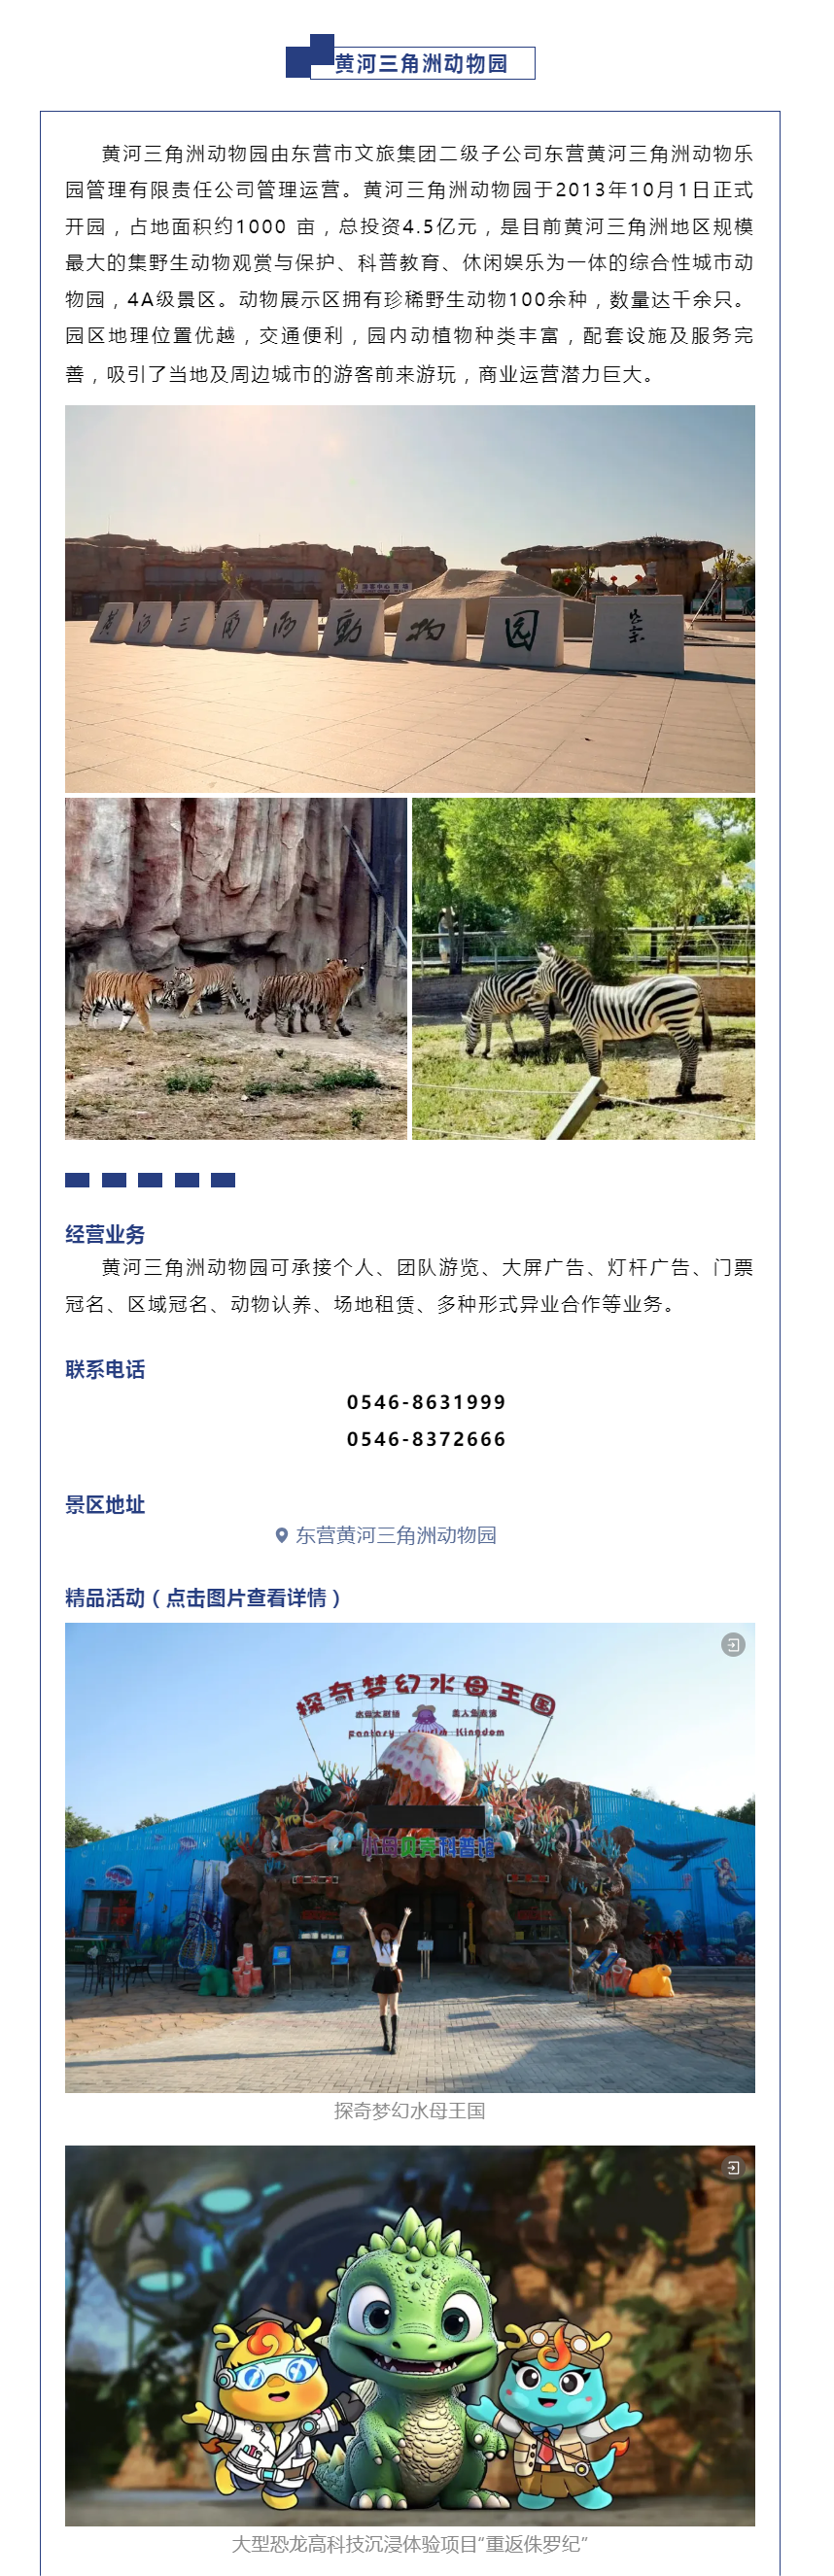 东营市水城雪莲文化艺术有限责任公司,东营黄河三角洲动物乐园管理